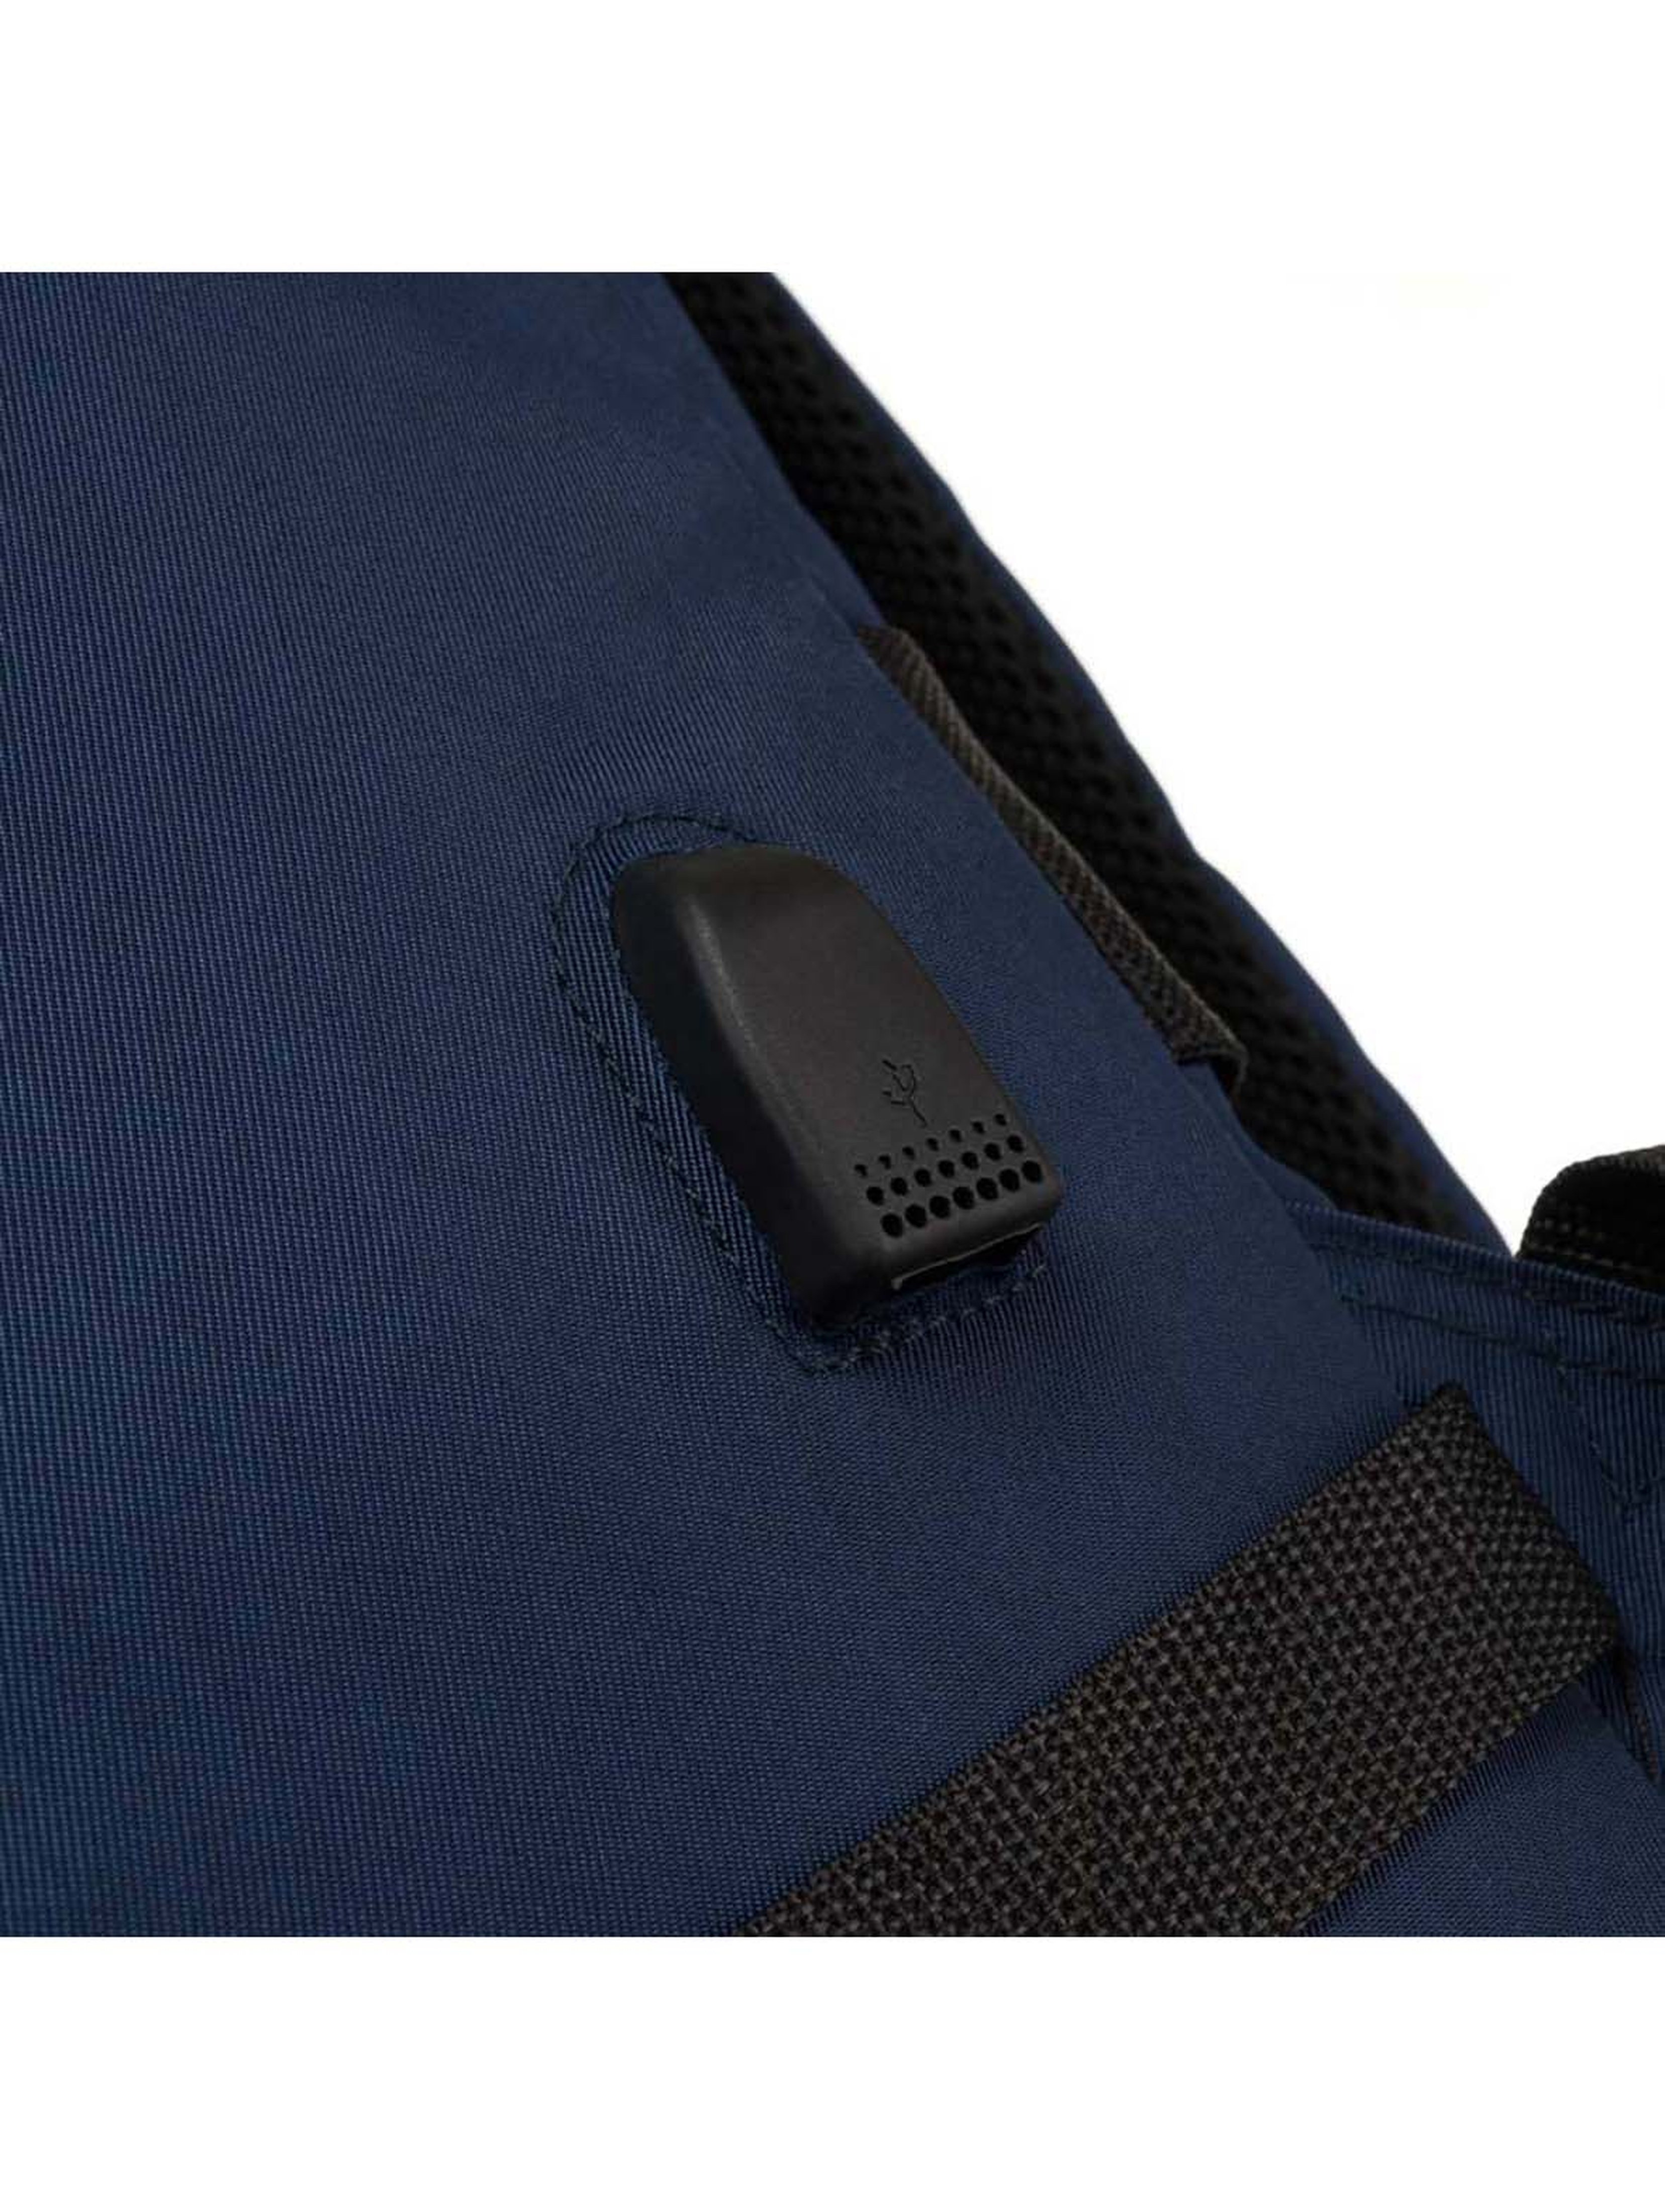 Pojemny, podróżny różowy plecak kabinowy z portem USB - Peterson